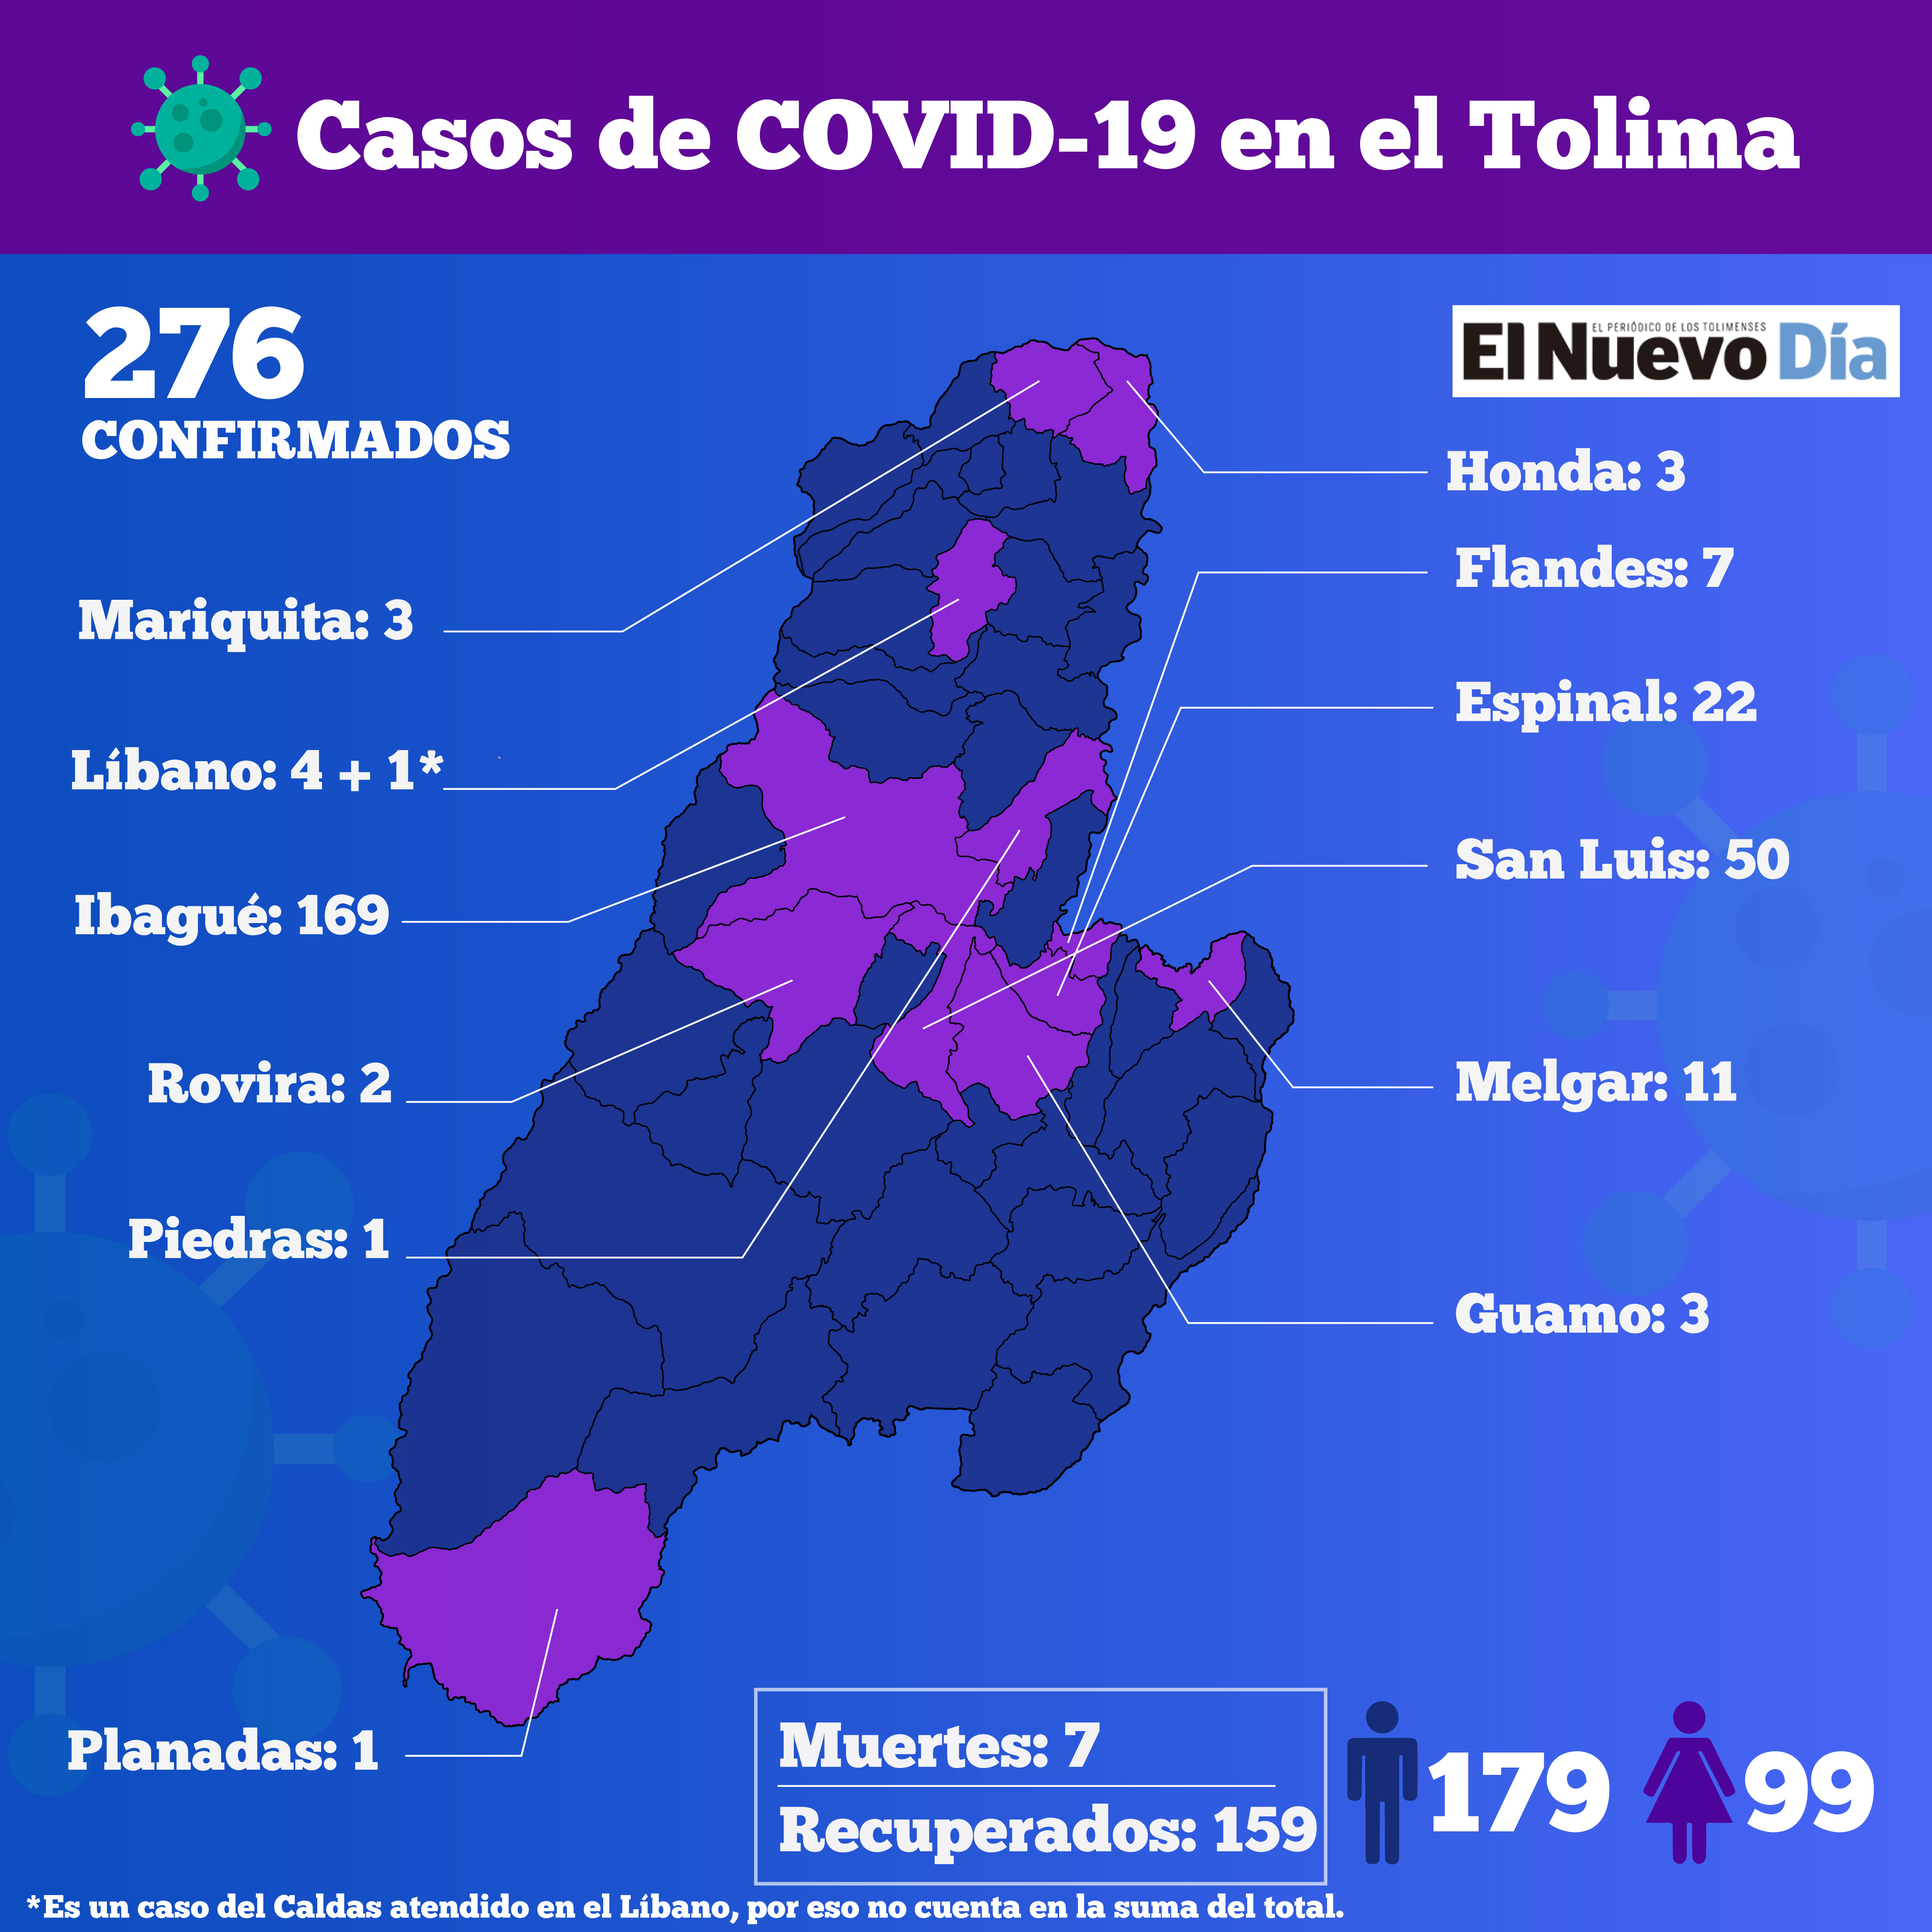 Mapa del Tolima